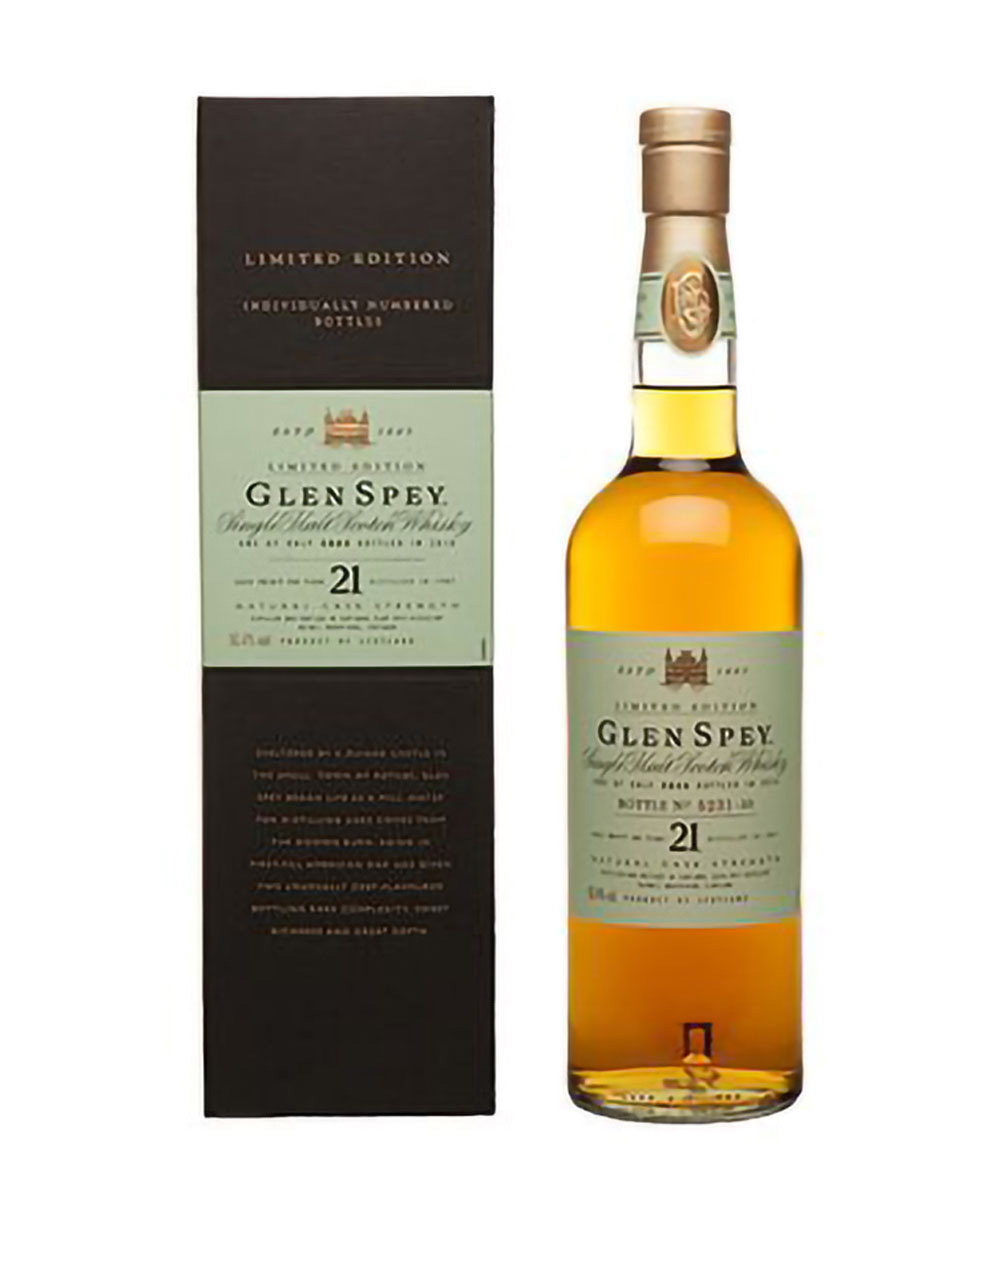 Glen Spey 21 Year Old Cask Strength Single Malt Scotch Whisky